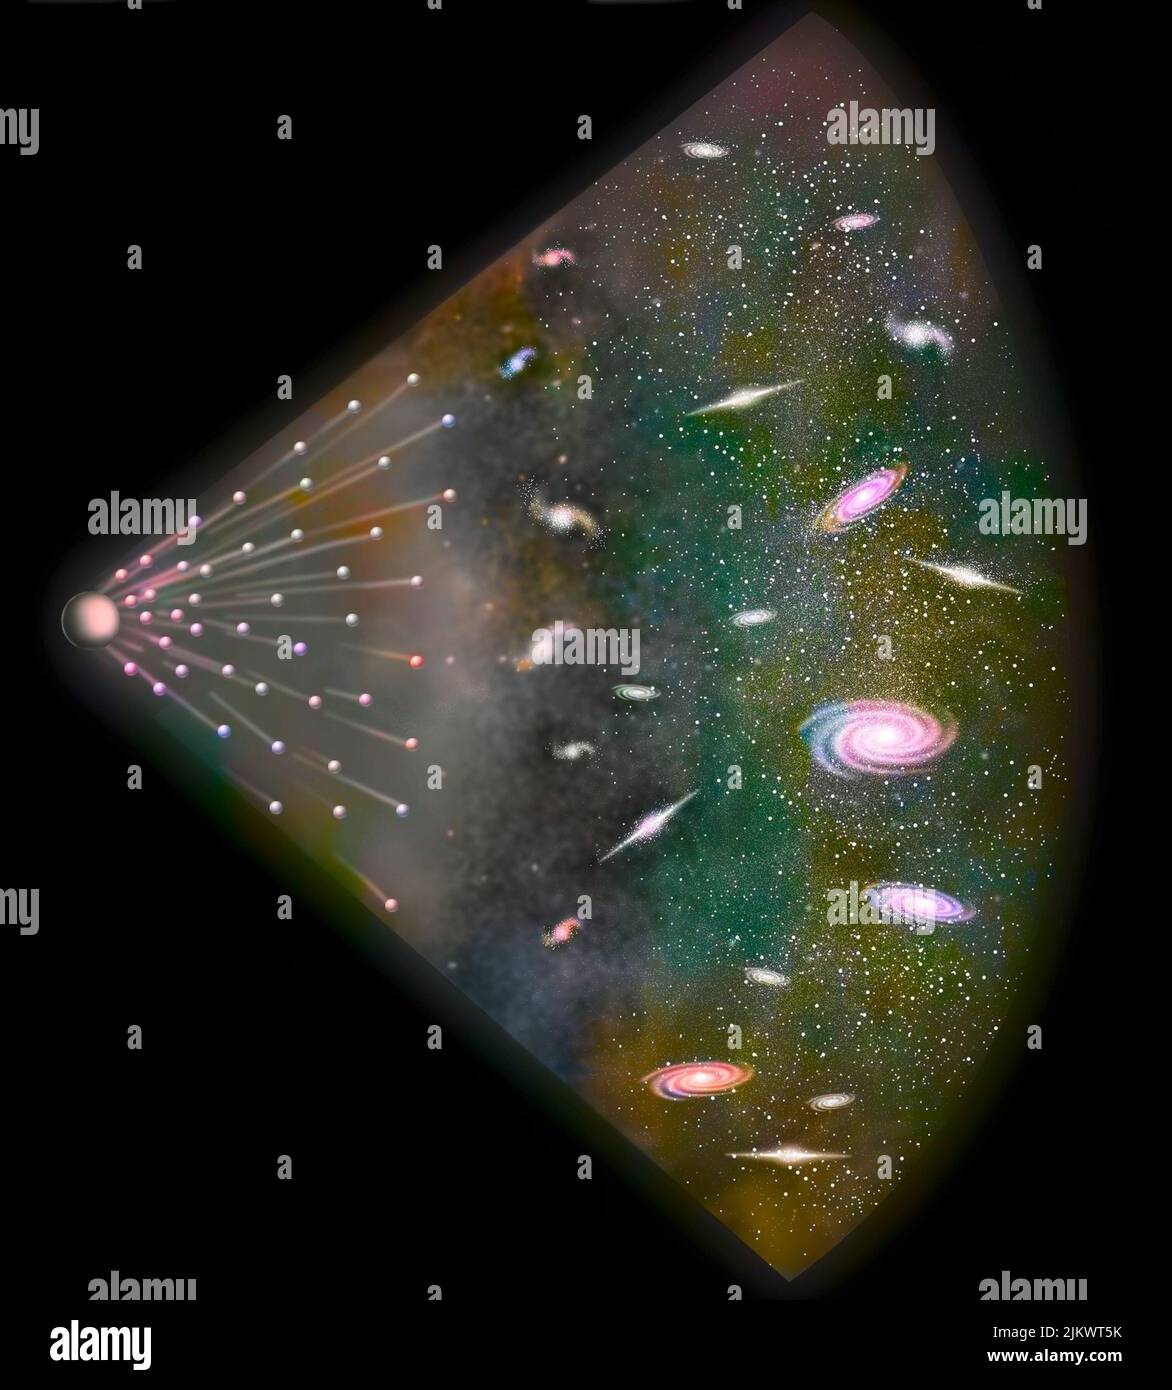 Secondo Lemaître, tutto inizia con un enorme atomo freddo che si disintegra, formando galassie. Foto Stock